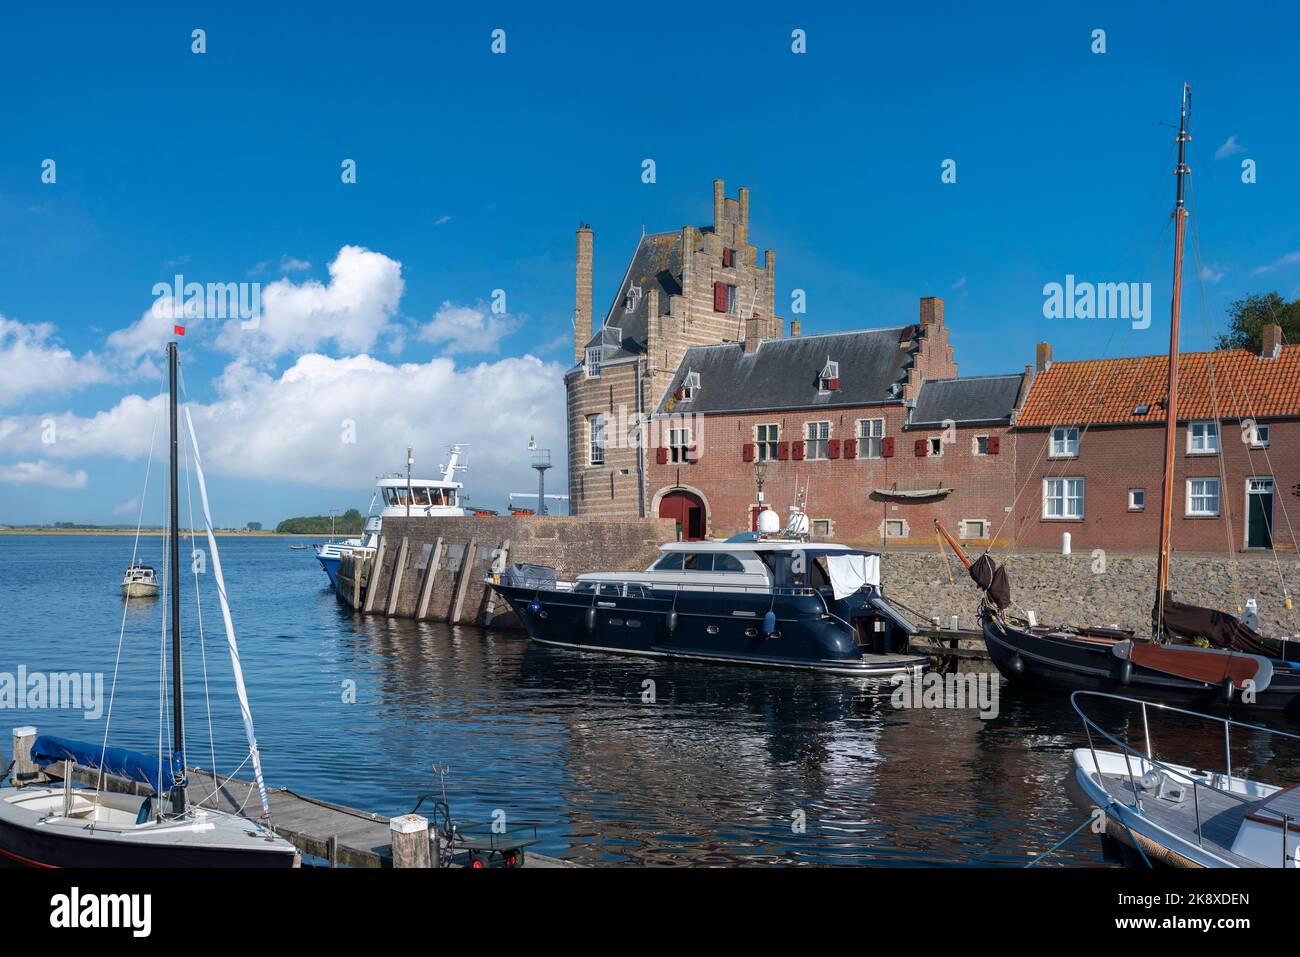 Historical city fortification Campveerse Toren, Veere, Zeeland, Netherlands, Europe Stock Photo